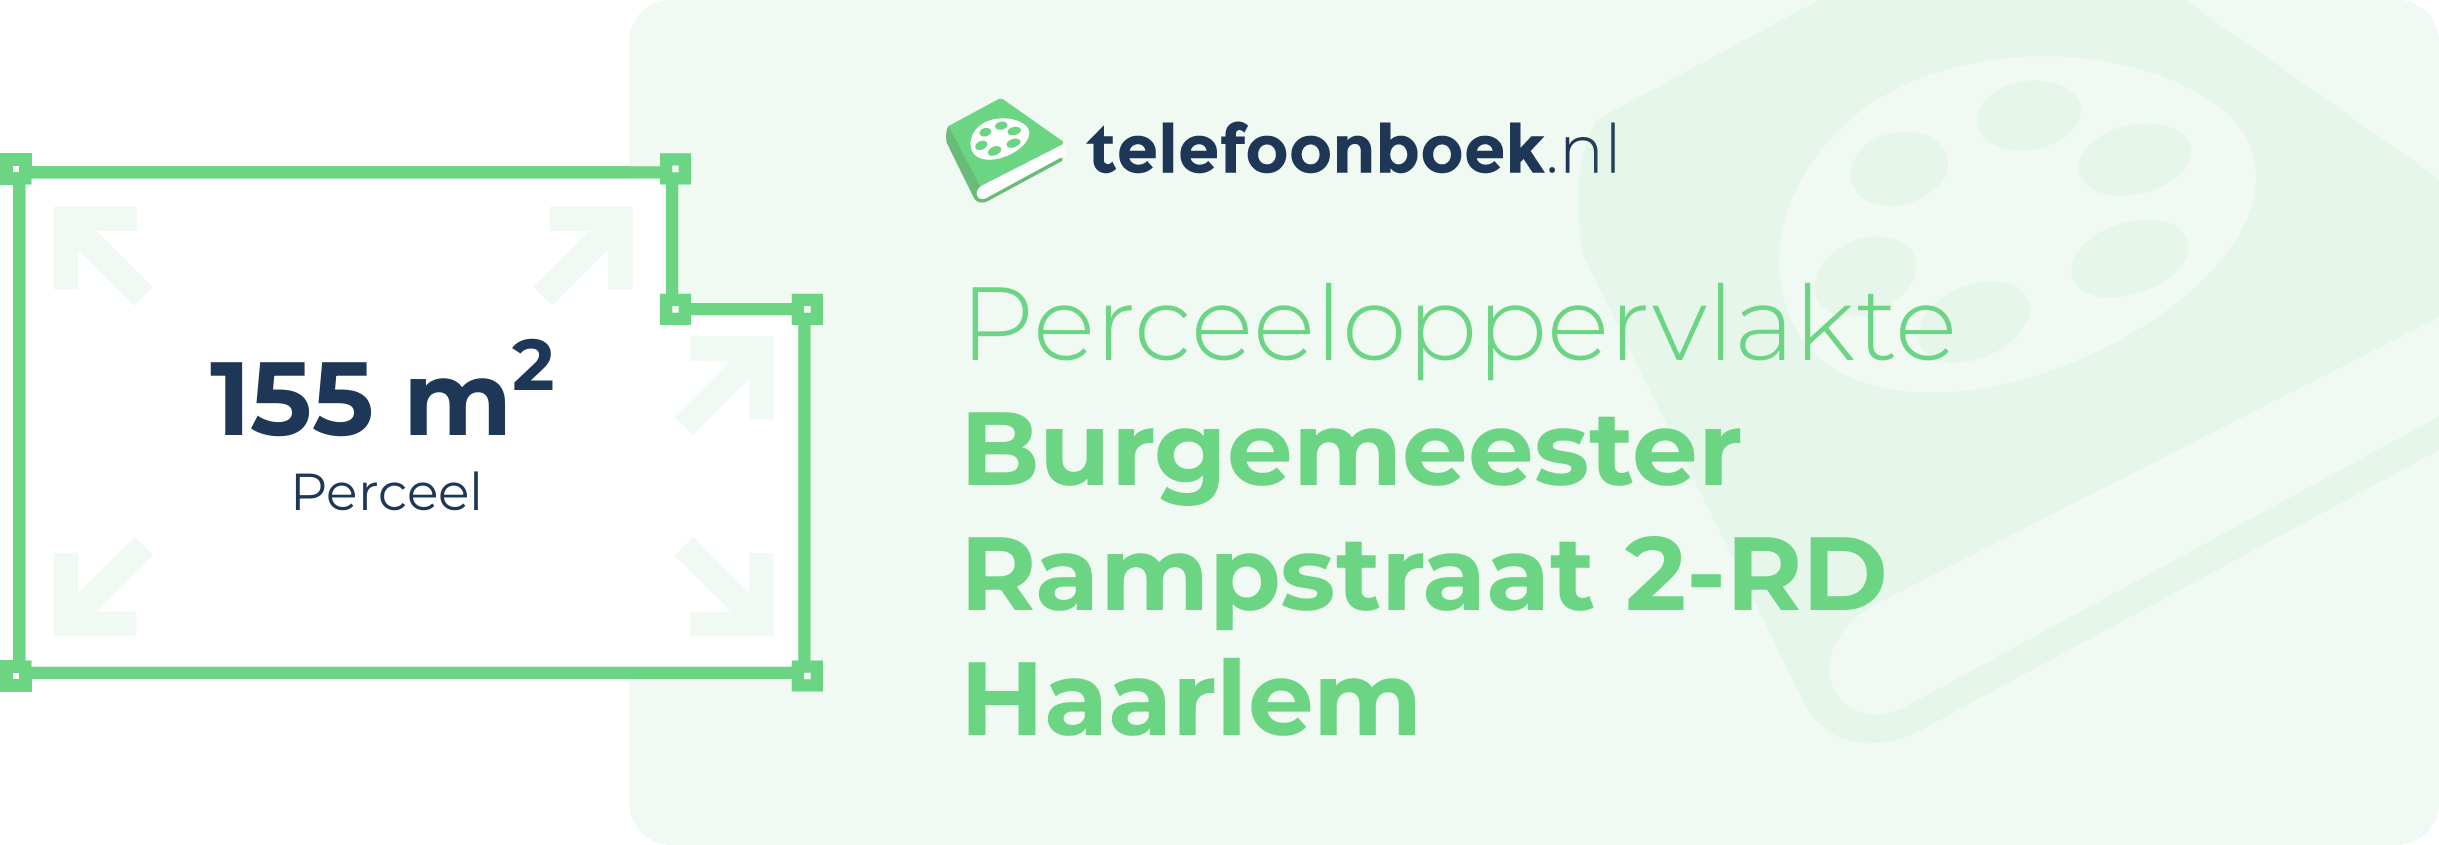 Perceeloppervlakte Burgemeester Rampstraat 2-RD Haarlem